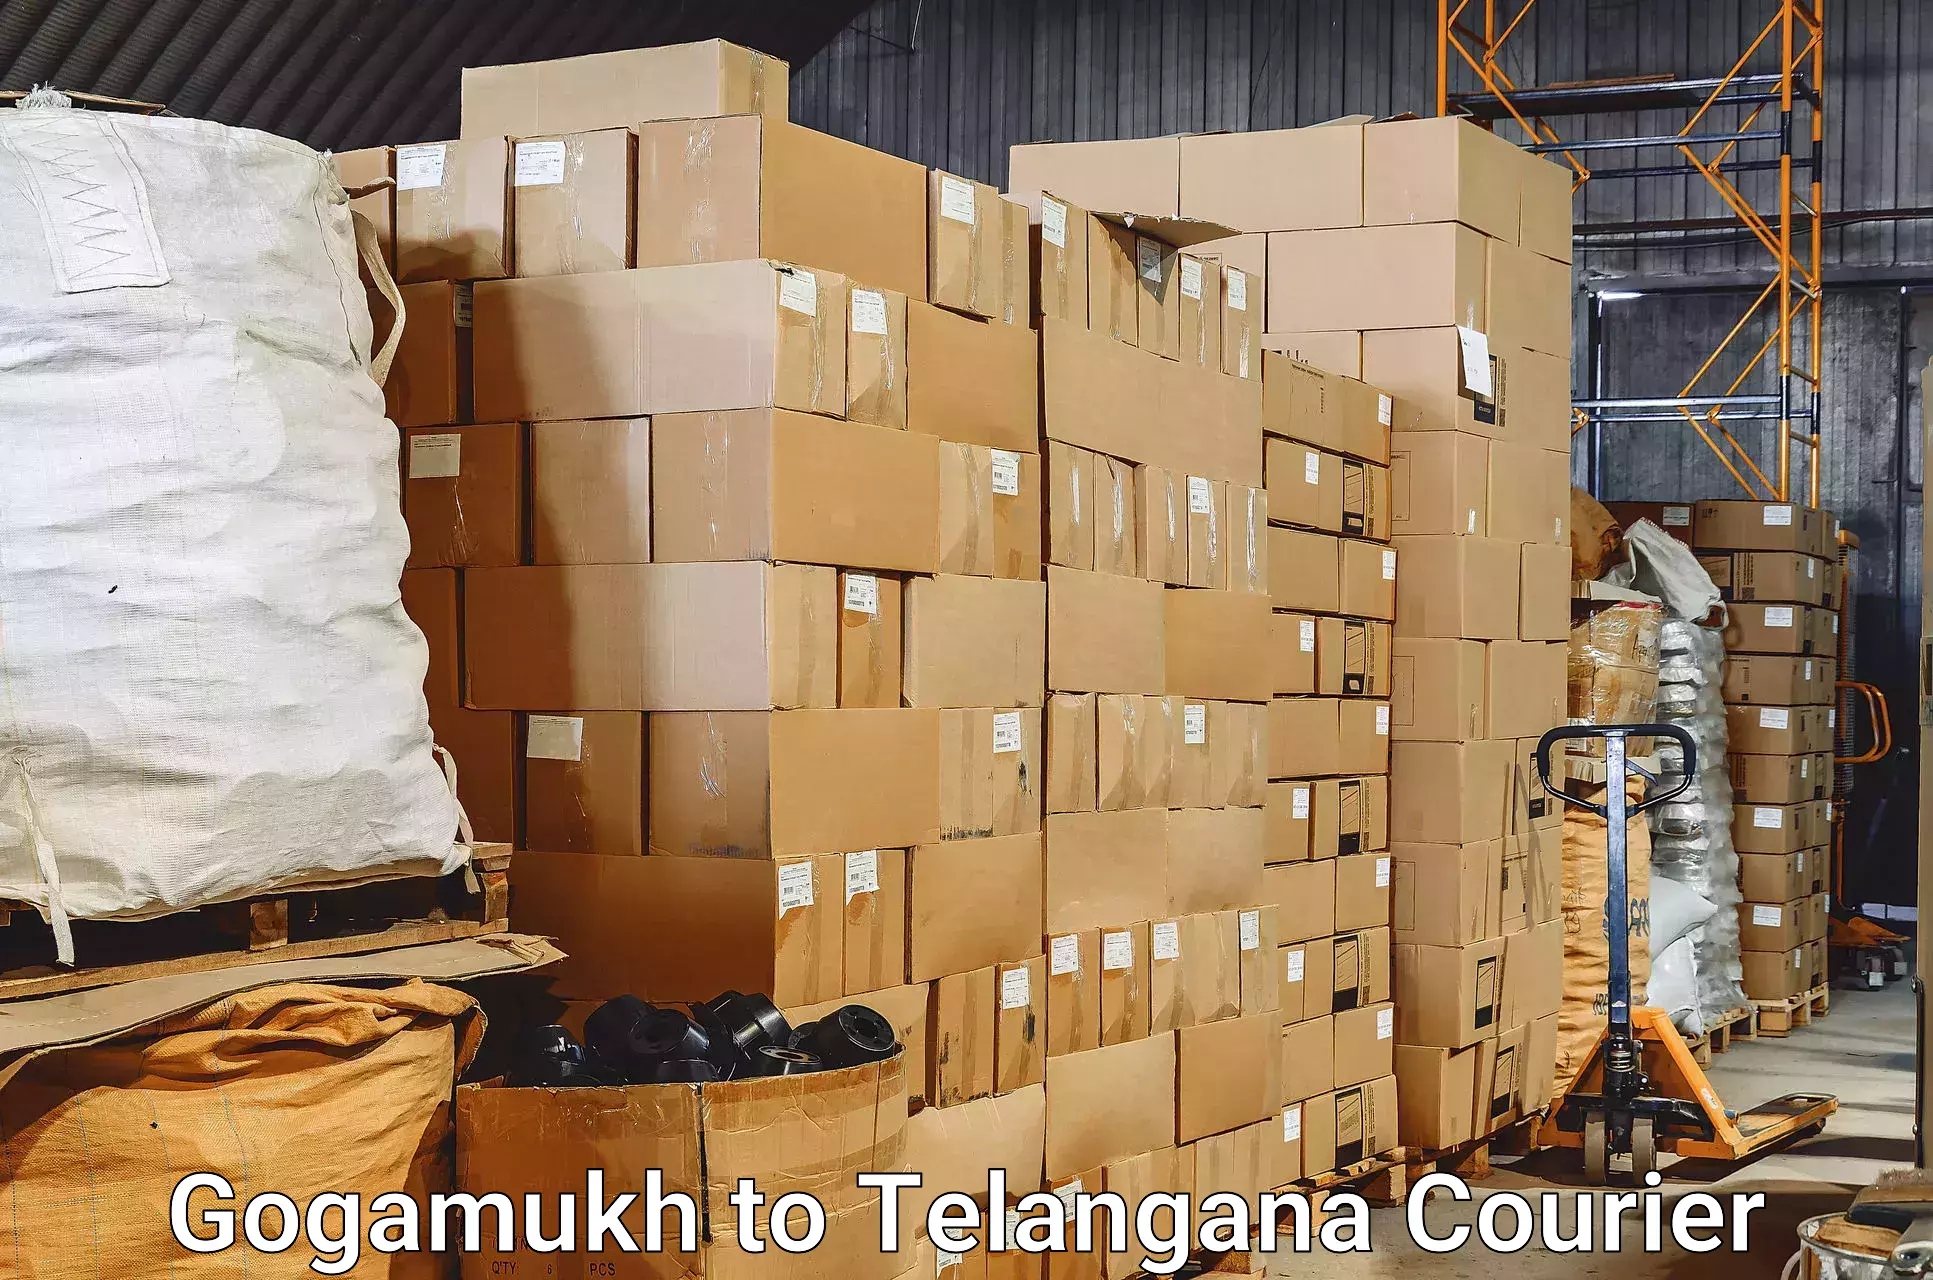 Baggage transport cost Gogamukh to Osmania University Hyderabad